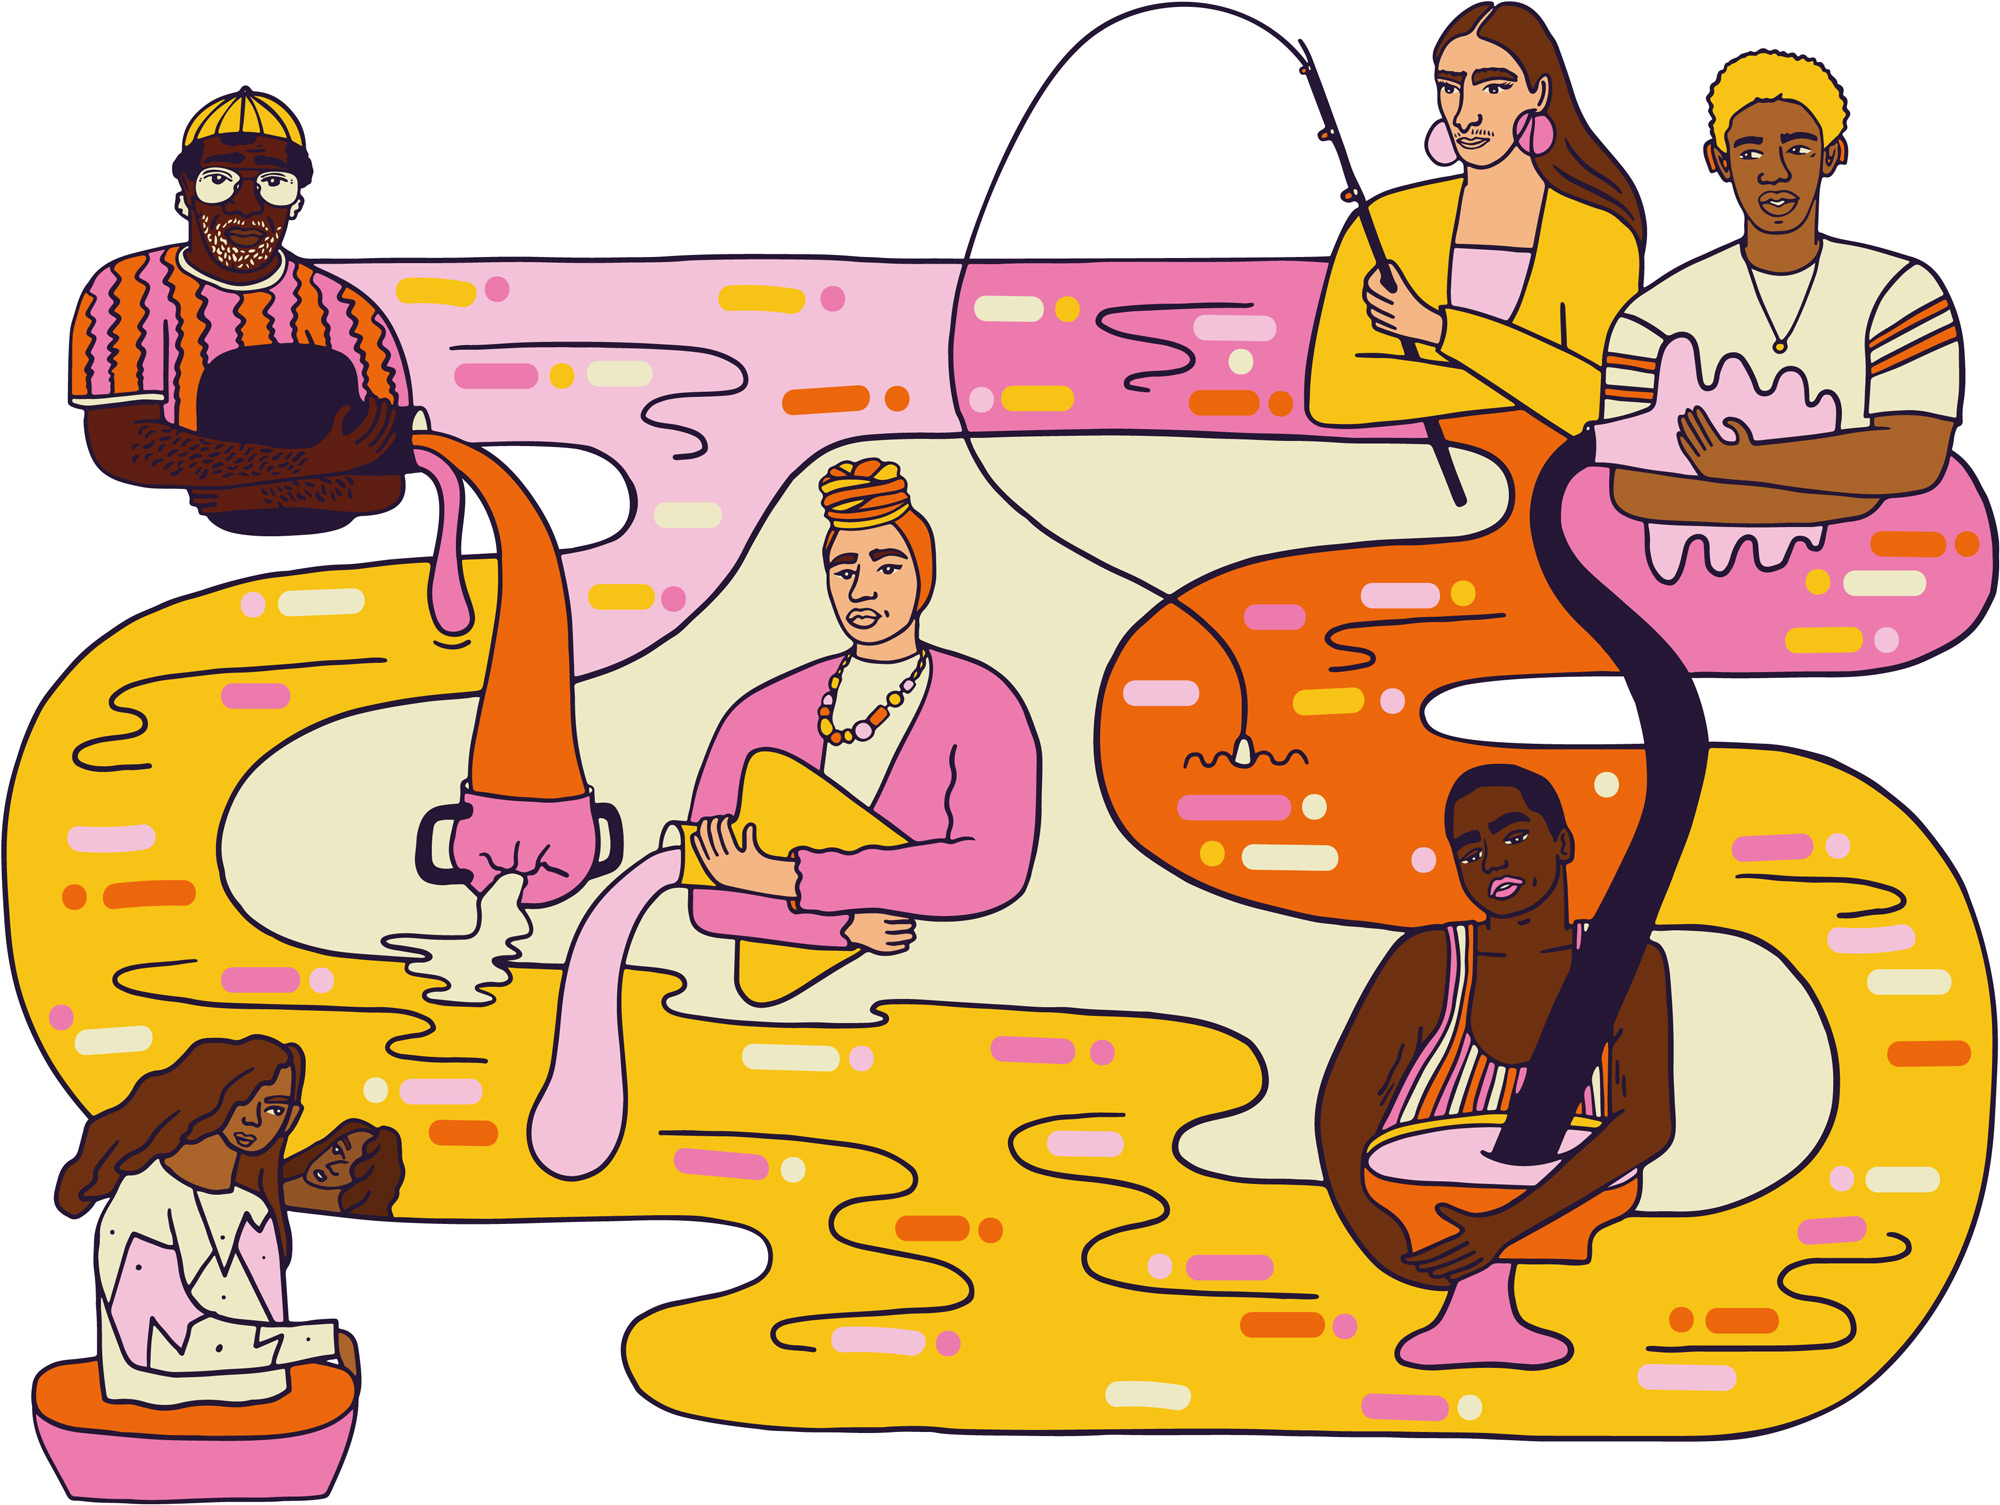 Illustration von sechs Personen unterschiedlicher Hautfarbe, die sich um einen bunten Fluss versammelt haben.